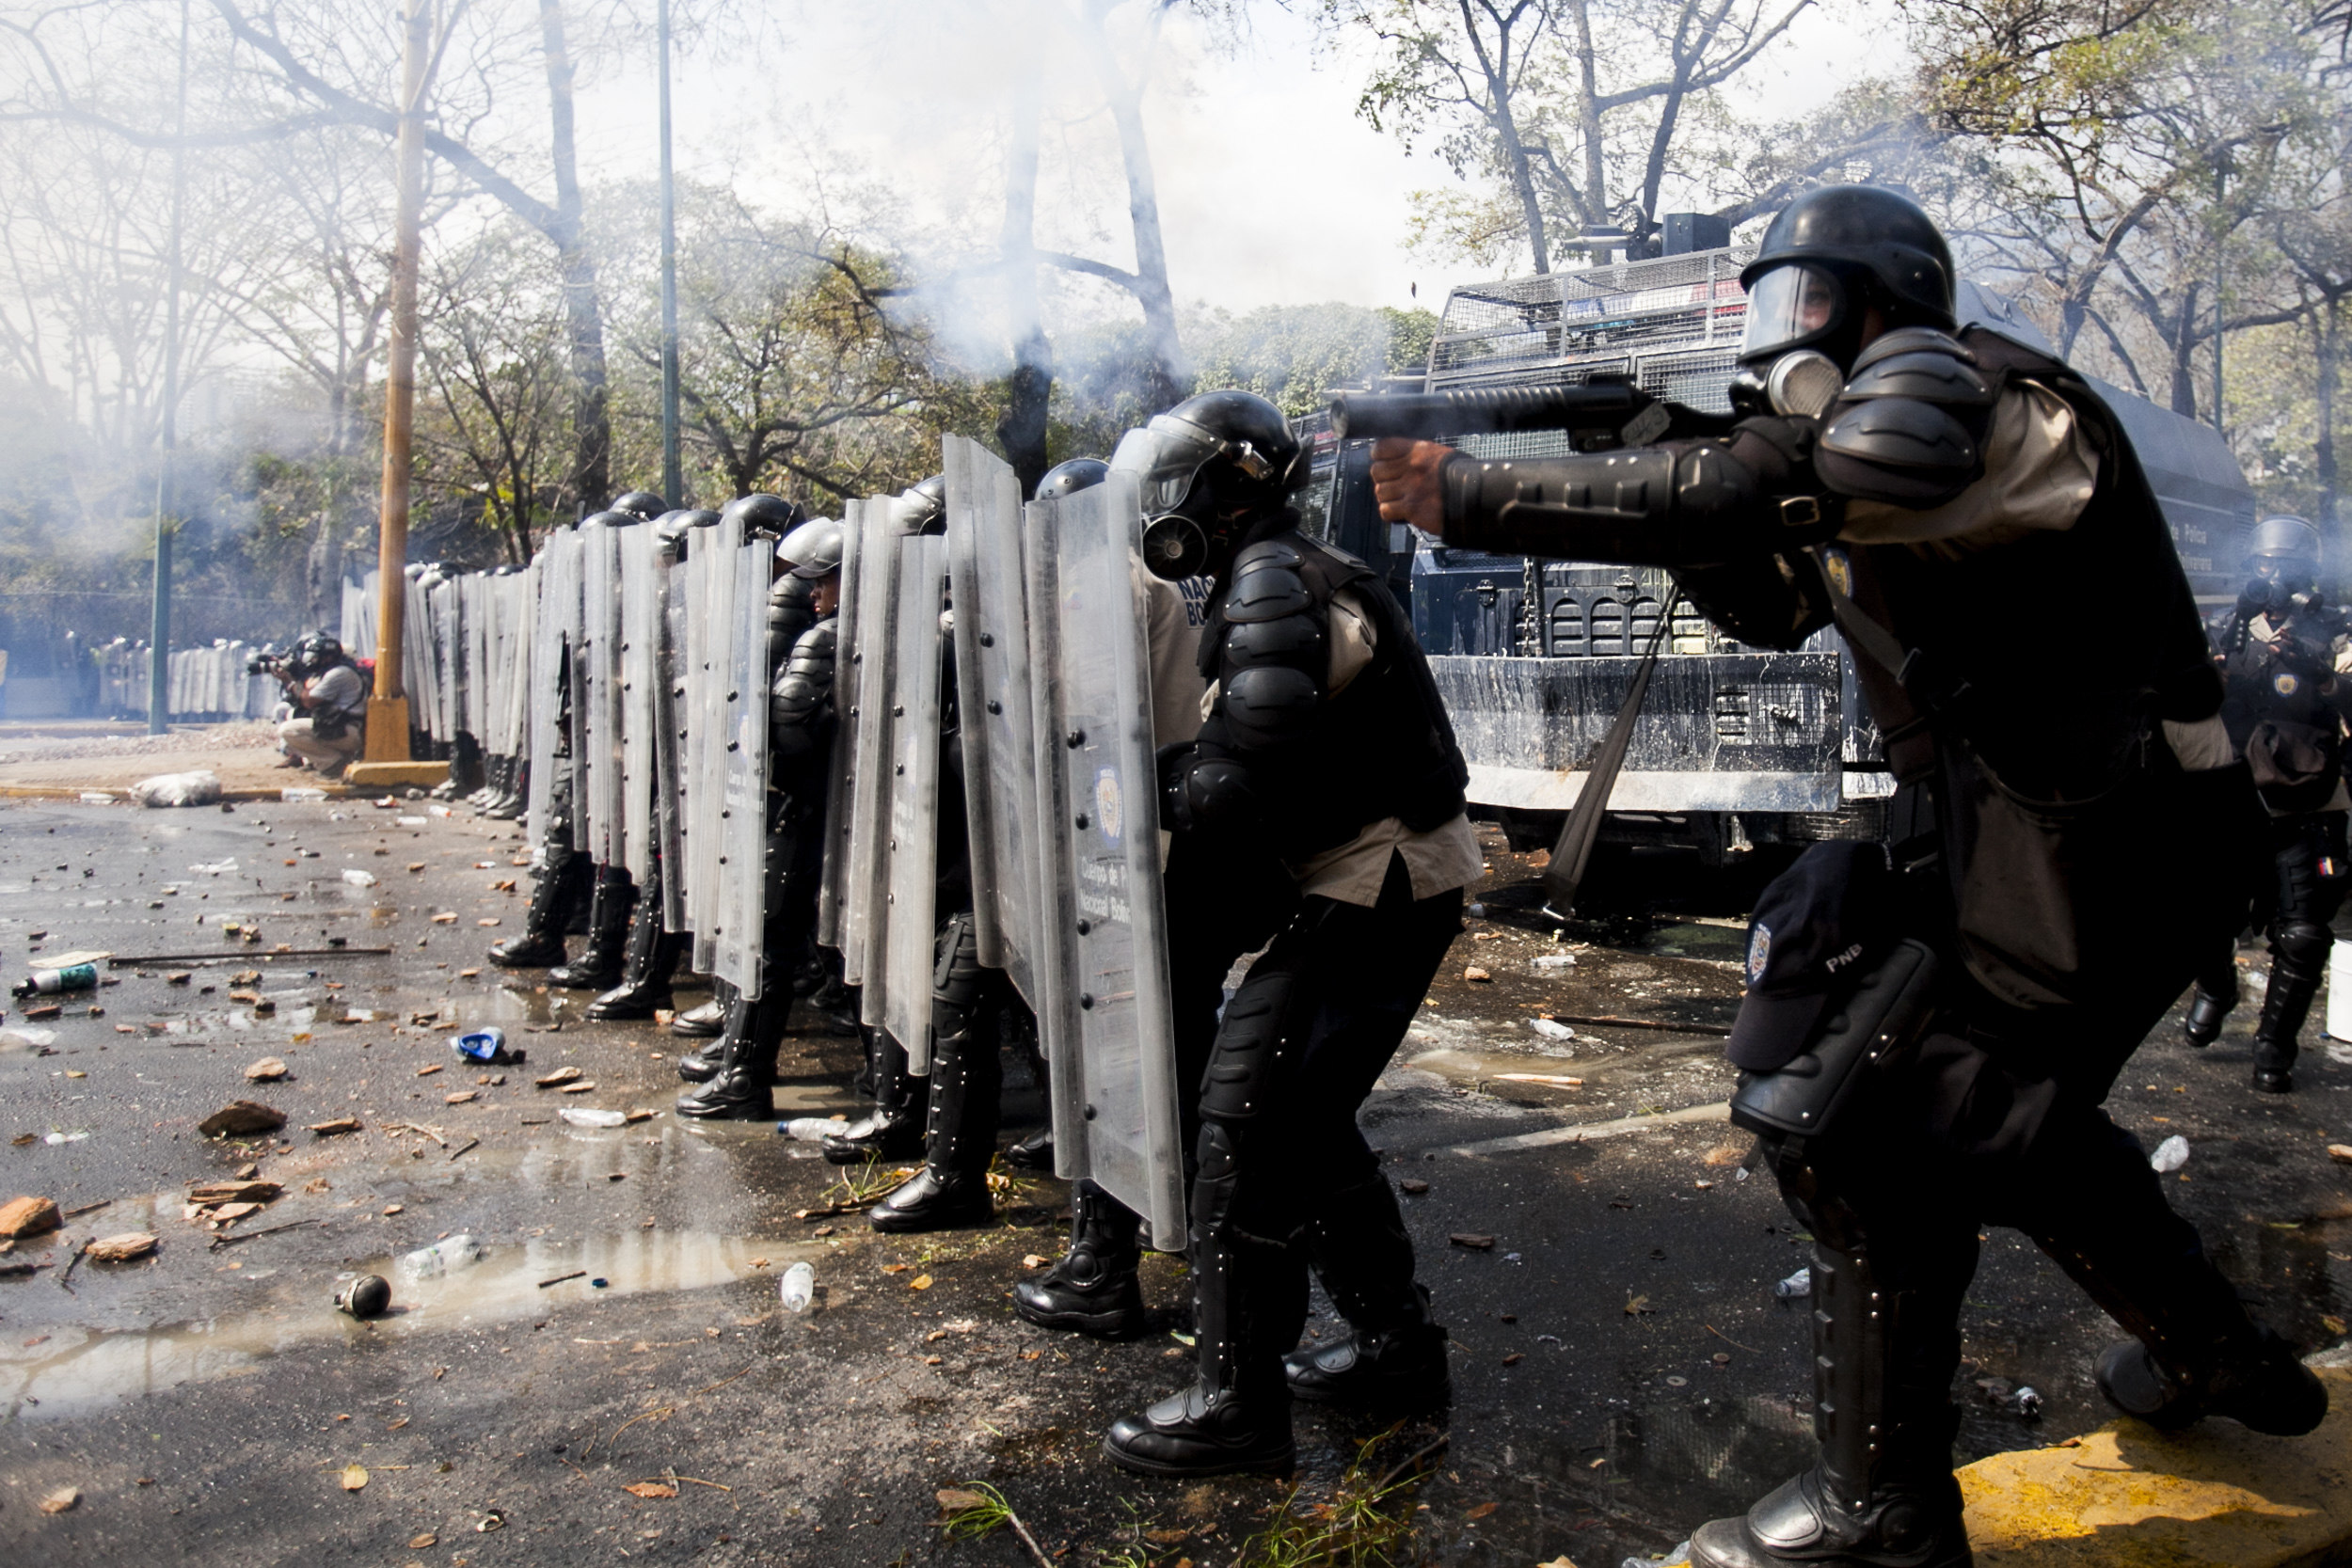 Comisión de Unasur evidencia un “firme rechazo” a la violencia en Venezuela (Comunicado)